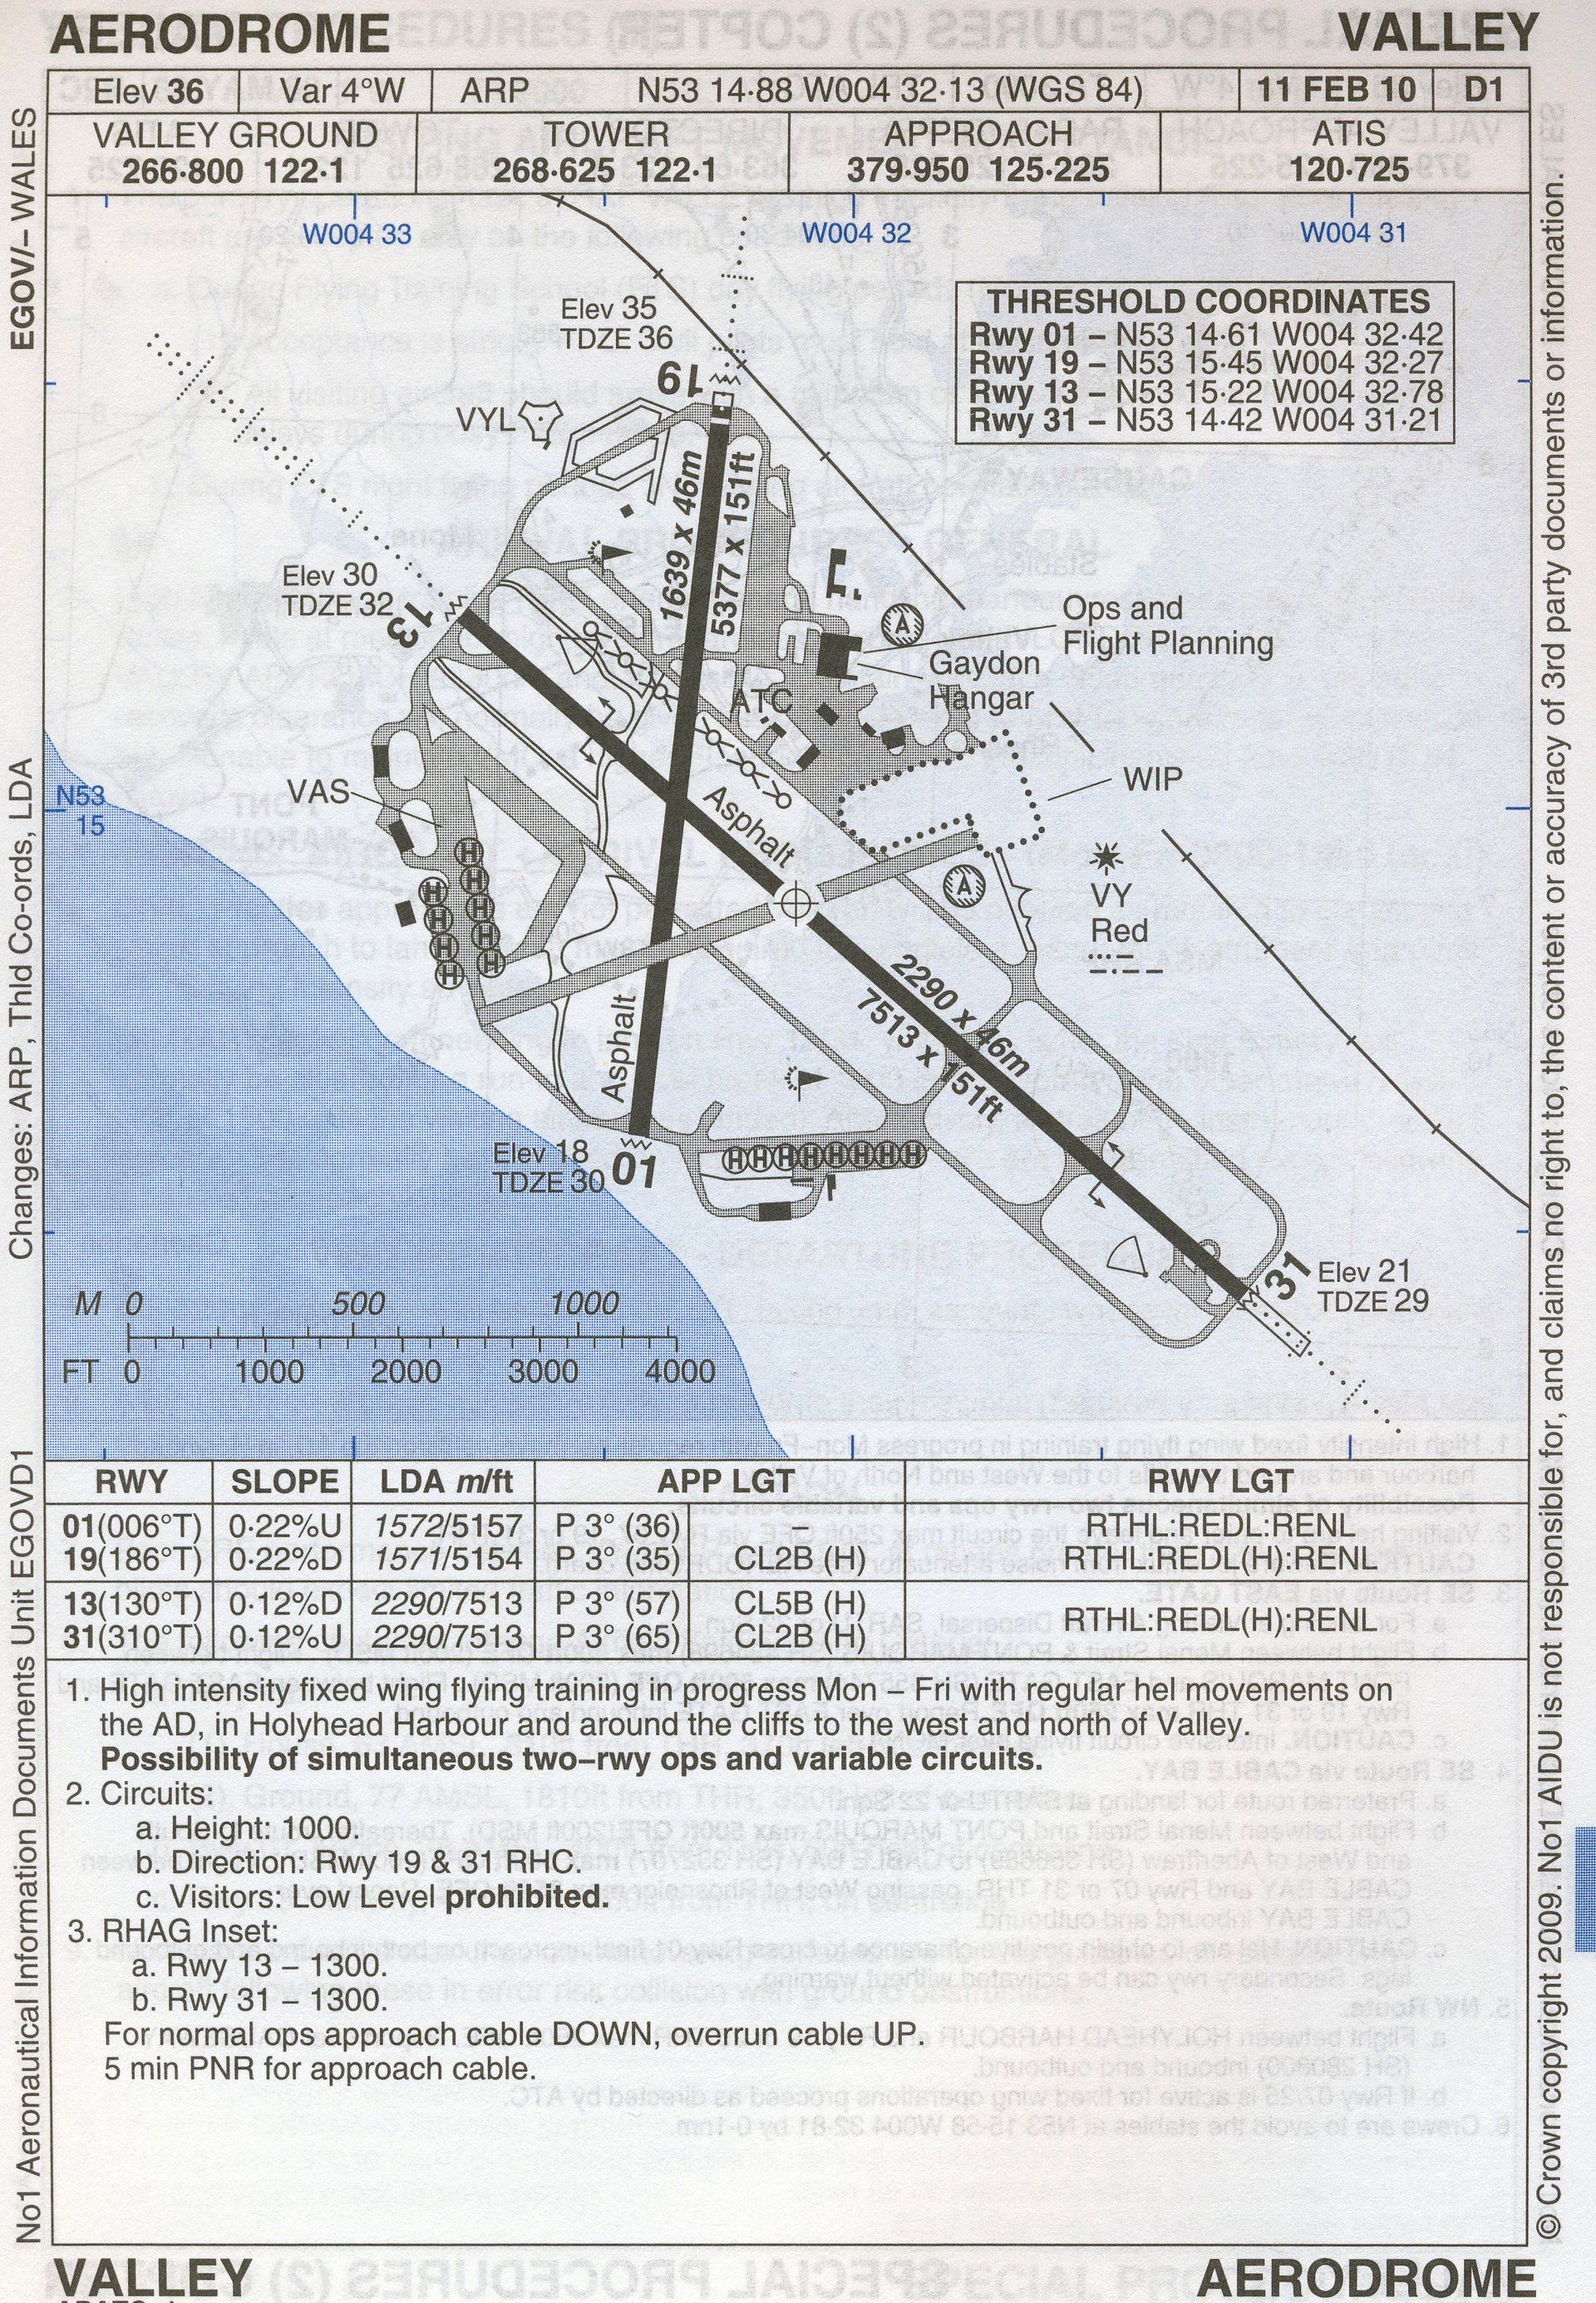 RAF Valley airfield information